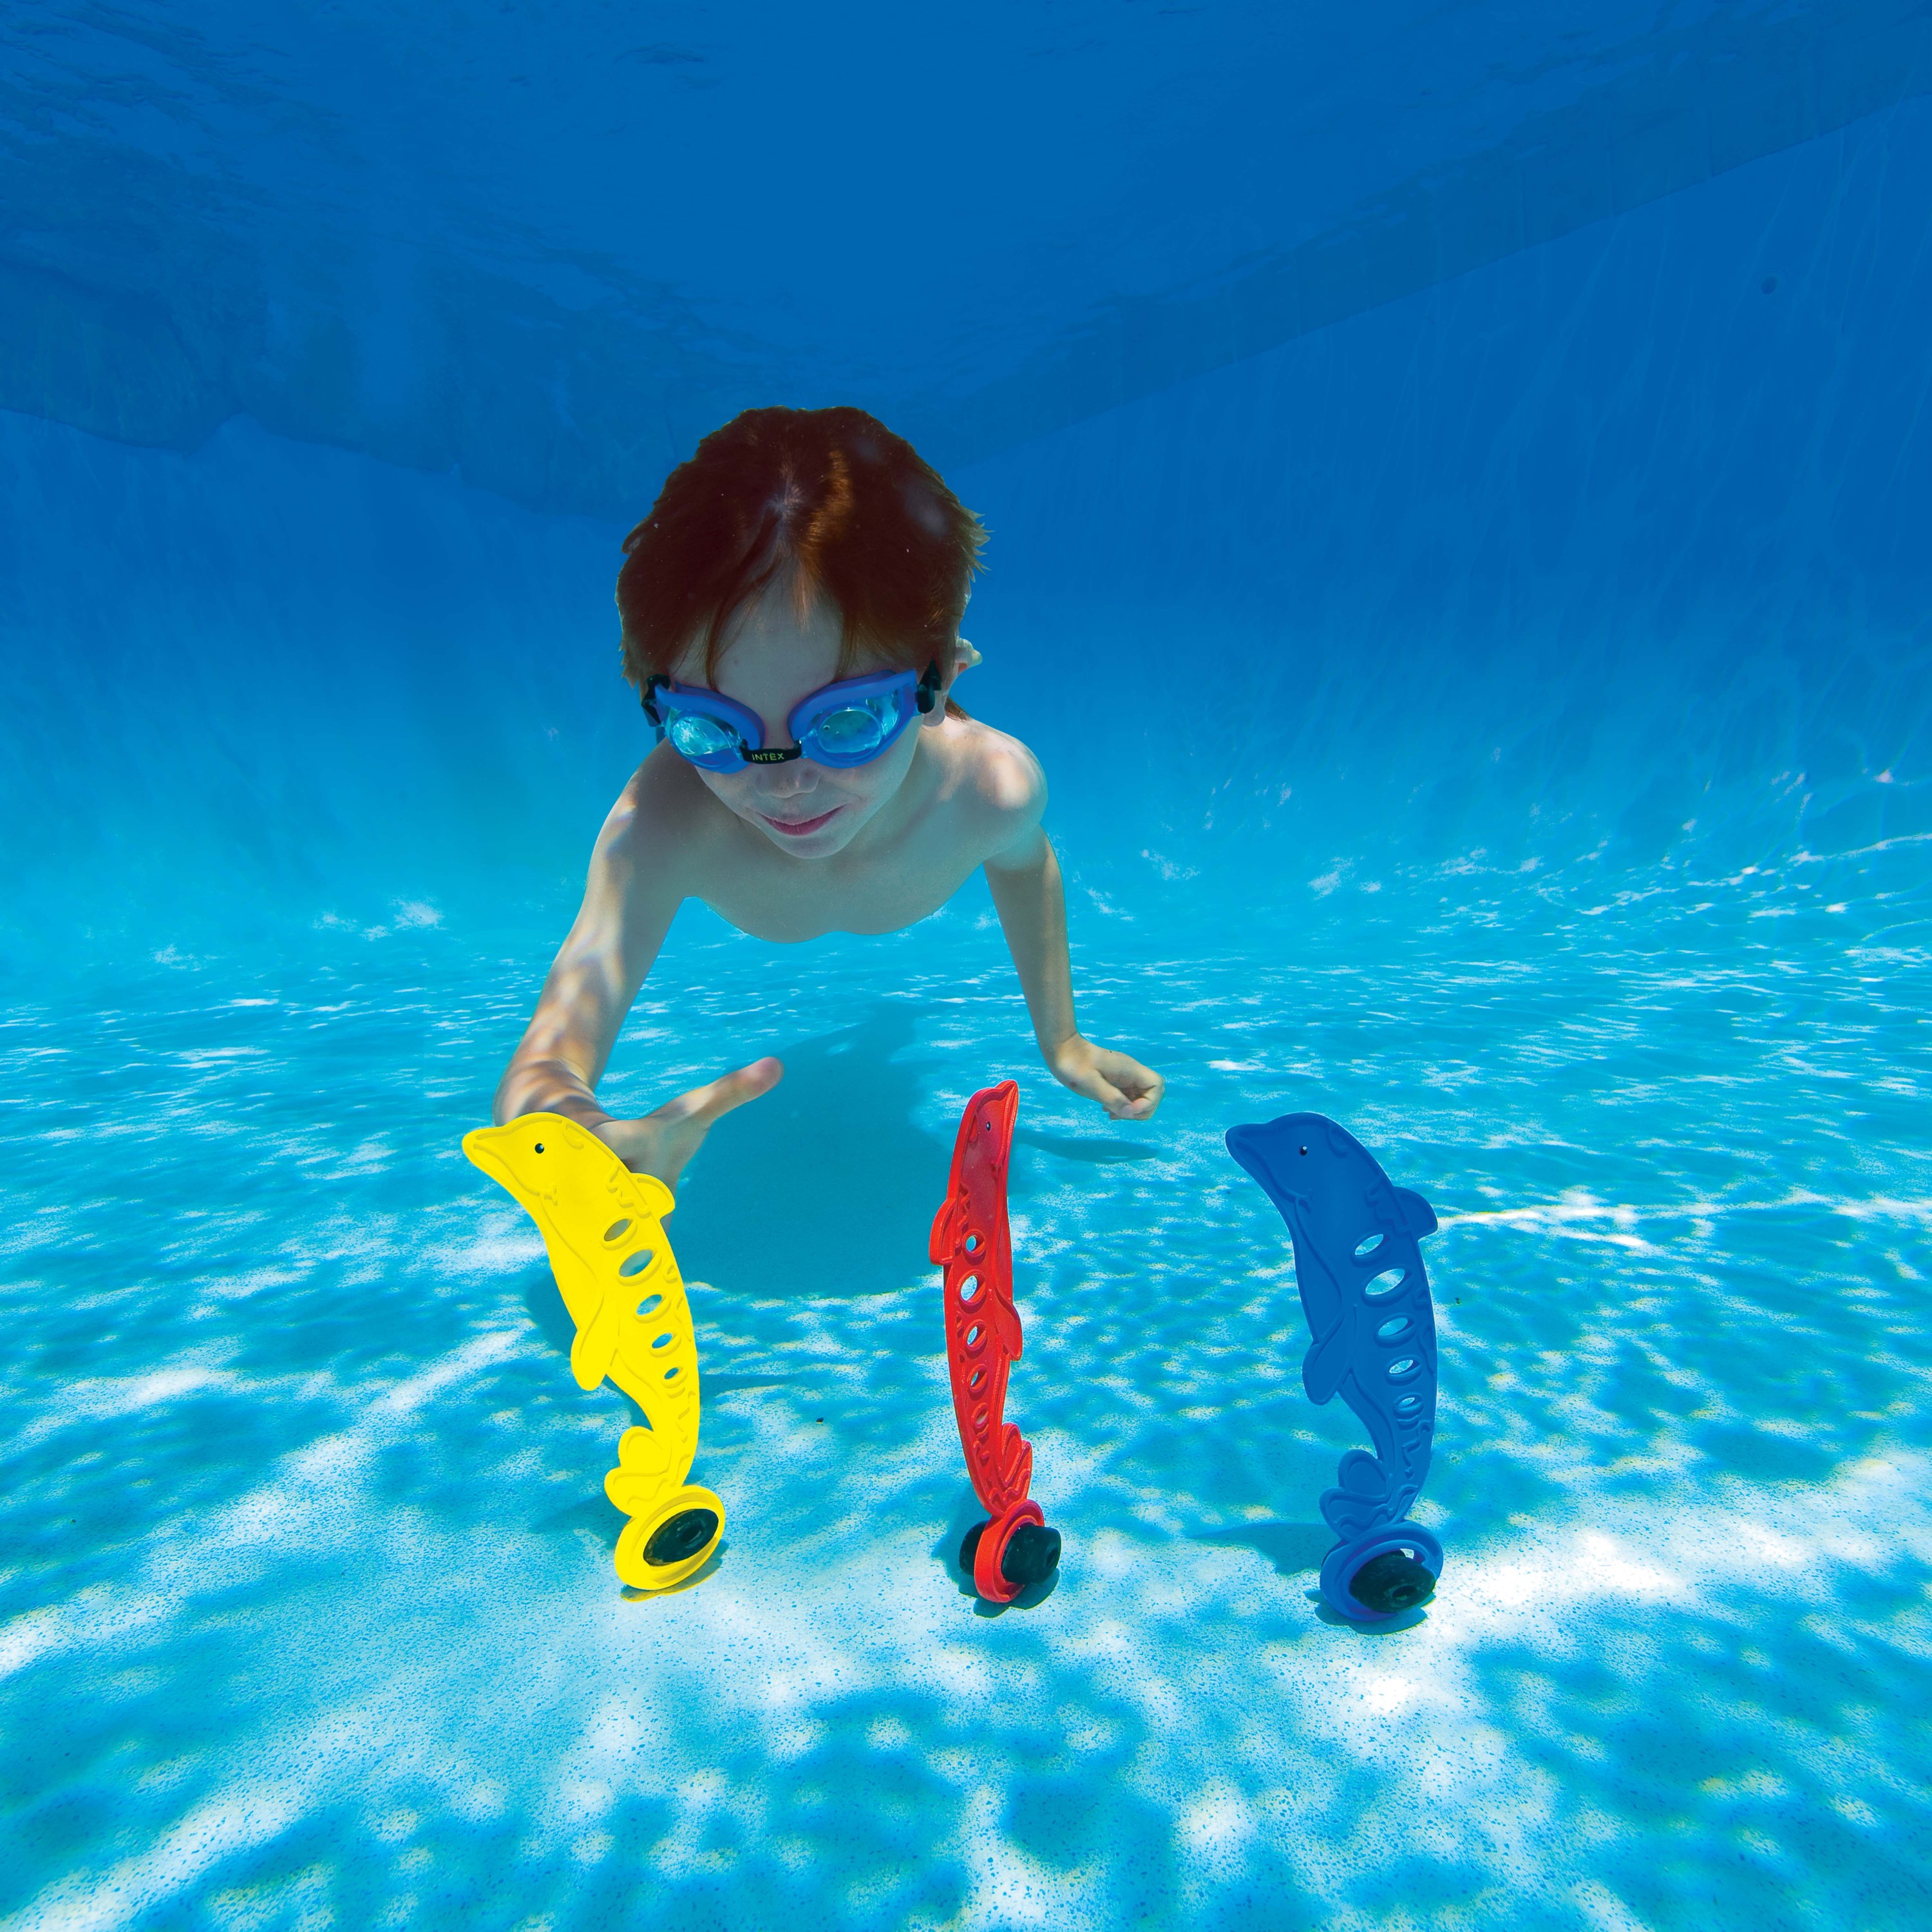 laat staan doel cijfer Intex opduik speeltjes - Zwembad kopen?